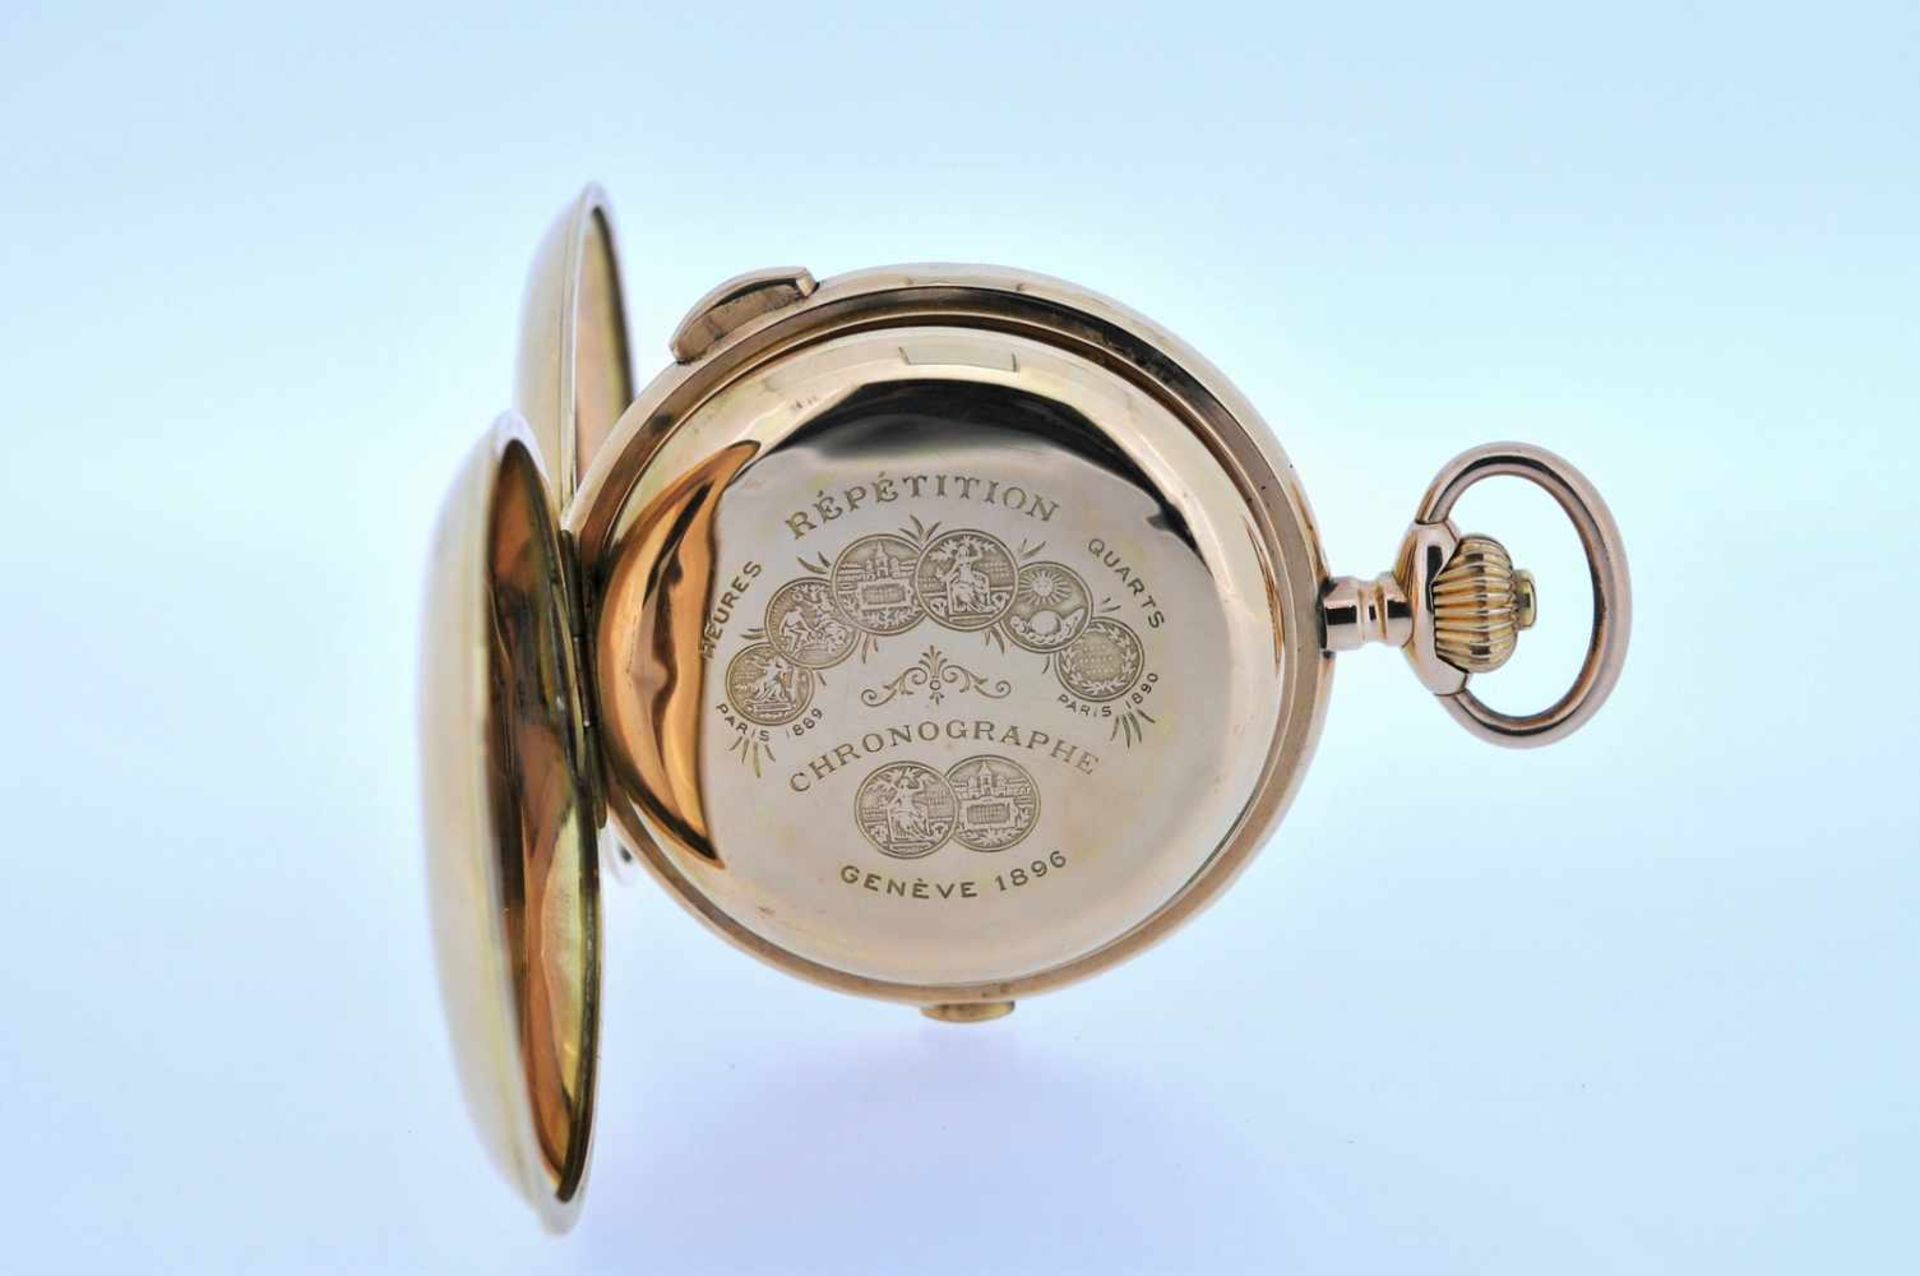 Viertelstundenrepetierer Goldene Taschenuhr mit Viertelstundenschlagwerk, kleiner Sekunde und - Bild 2 aus 4